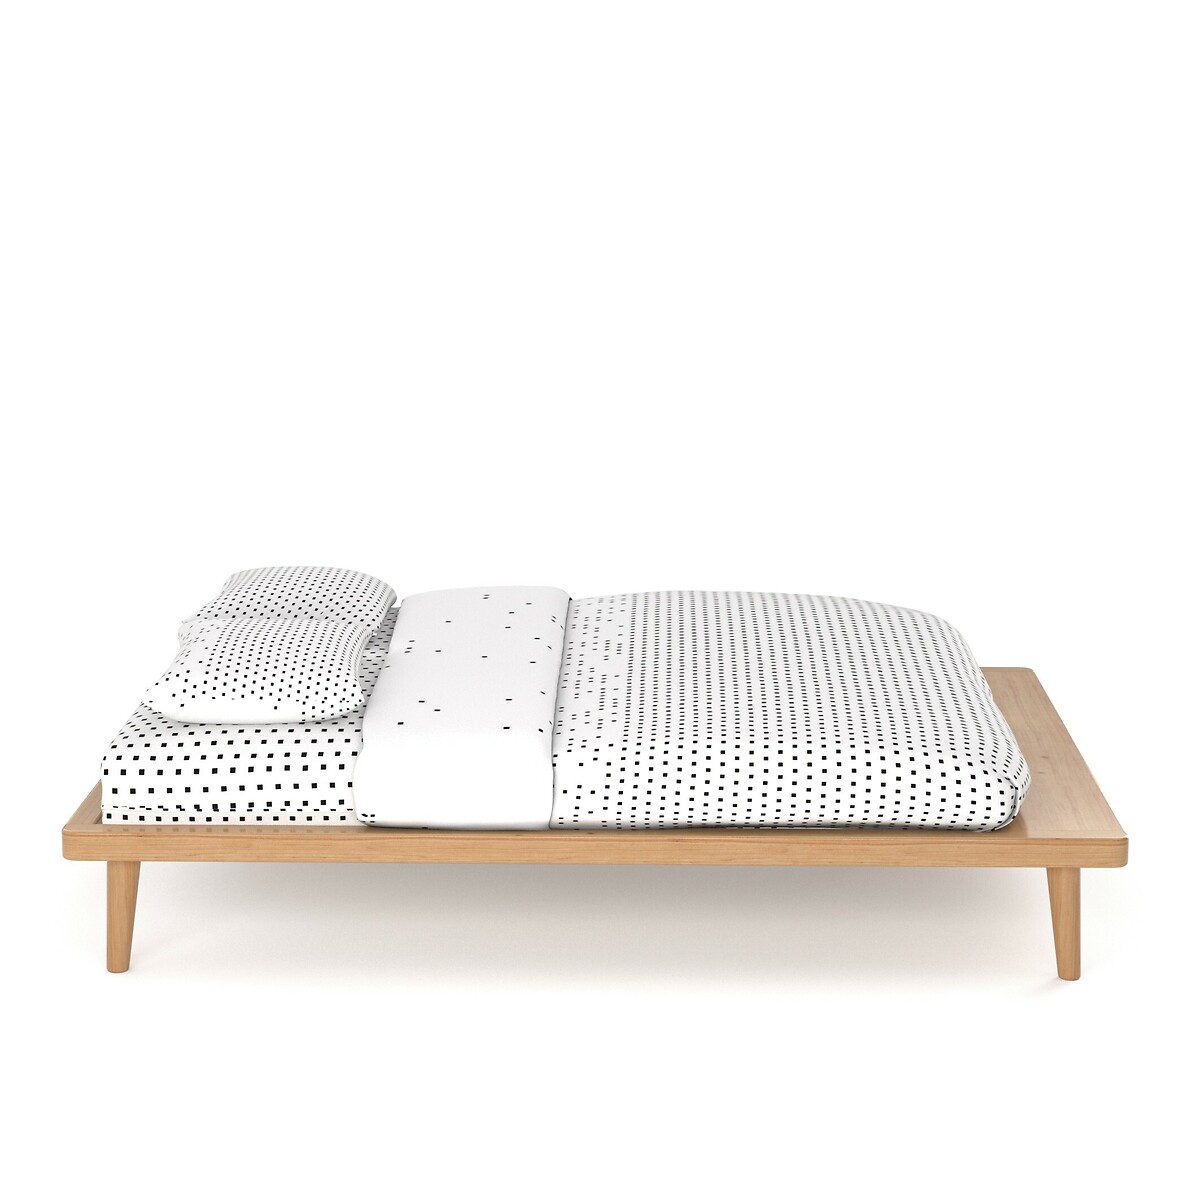 Кровать La Redoute С платформой из массива сосны  кроватное основание Jimi 140 x 190 см каштановый, размер 140 x 190 см - фото 3